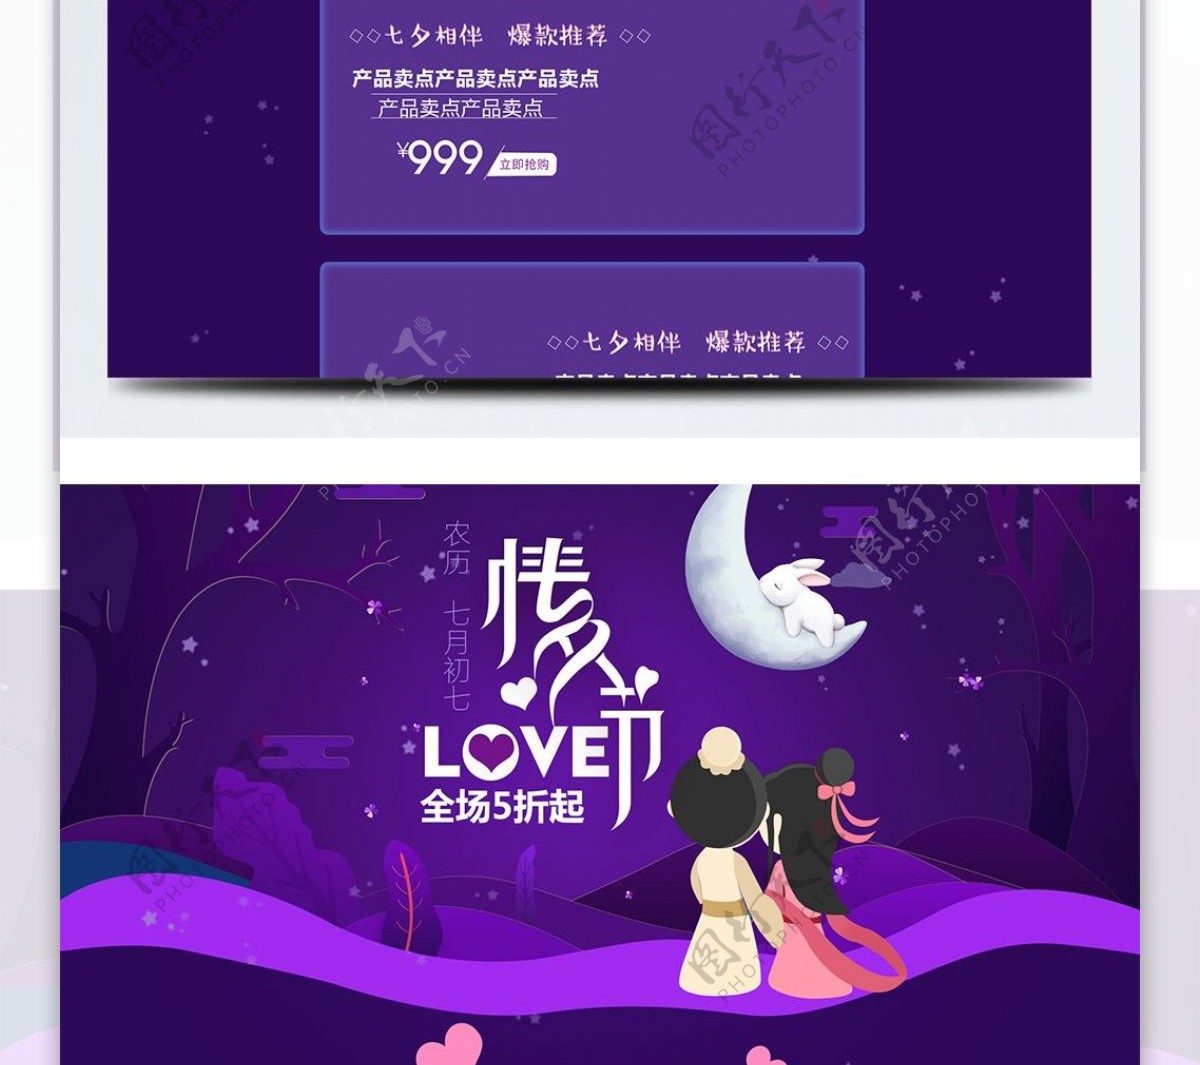 紫色唯美电商促销七夕情人节淘宝首页模板